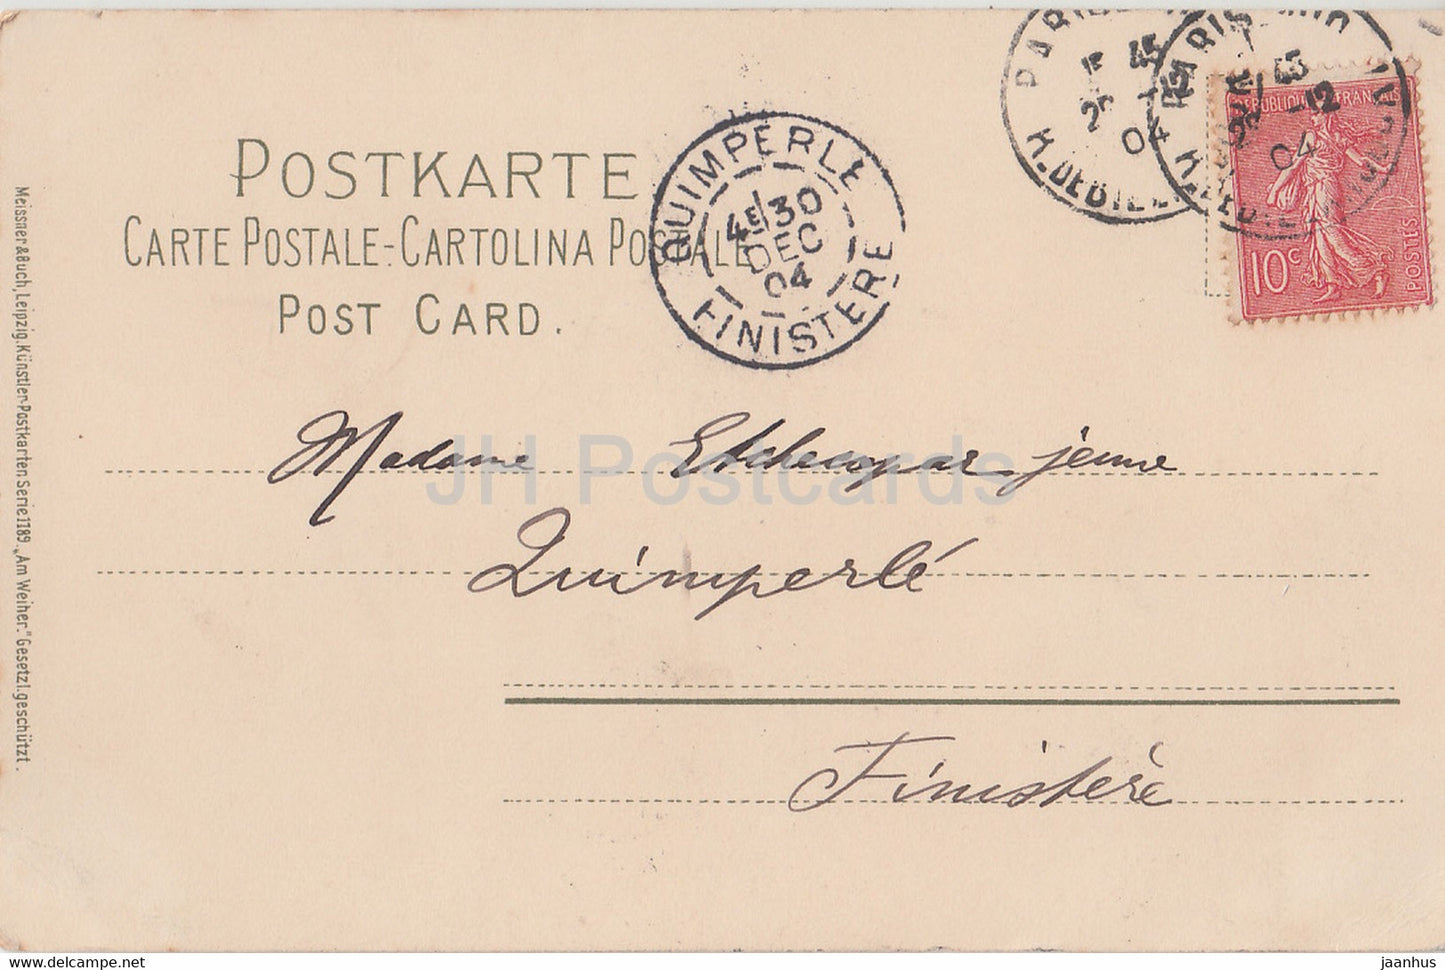 moulin à eau - cygne - illustration de FW Hayes - Série 1189 - carte postale ancienne - 1904 - Allemagne - utilisé